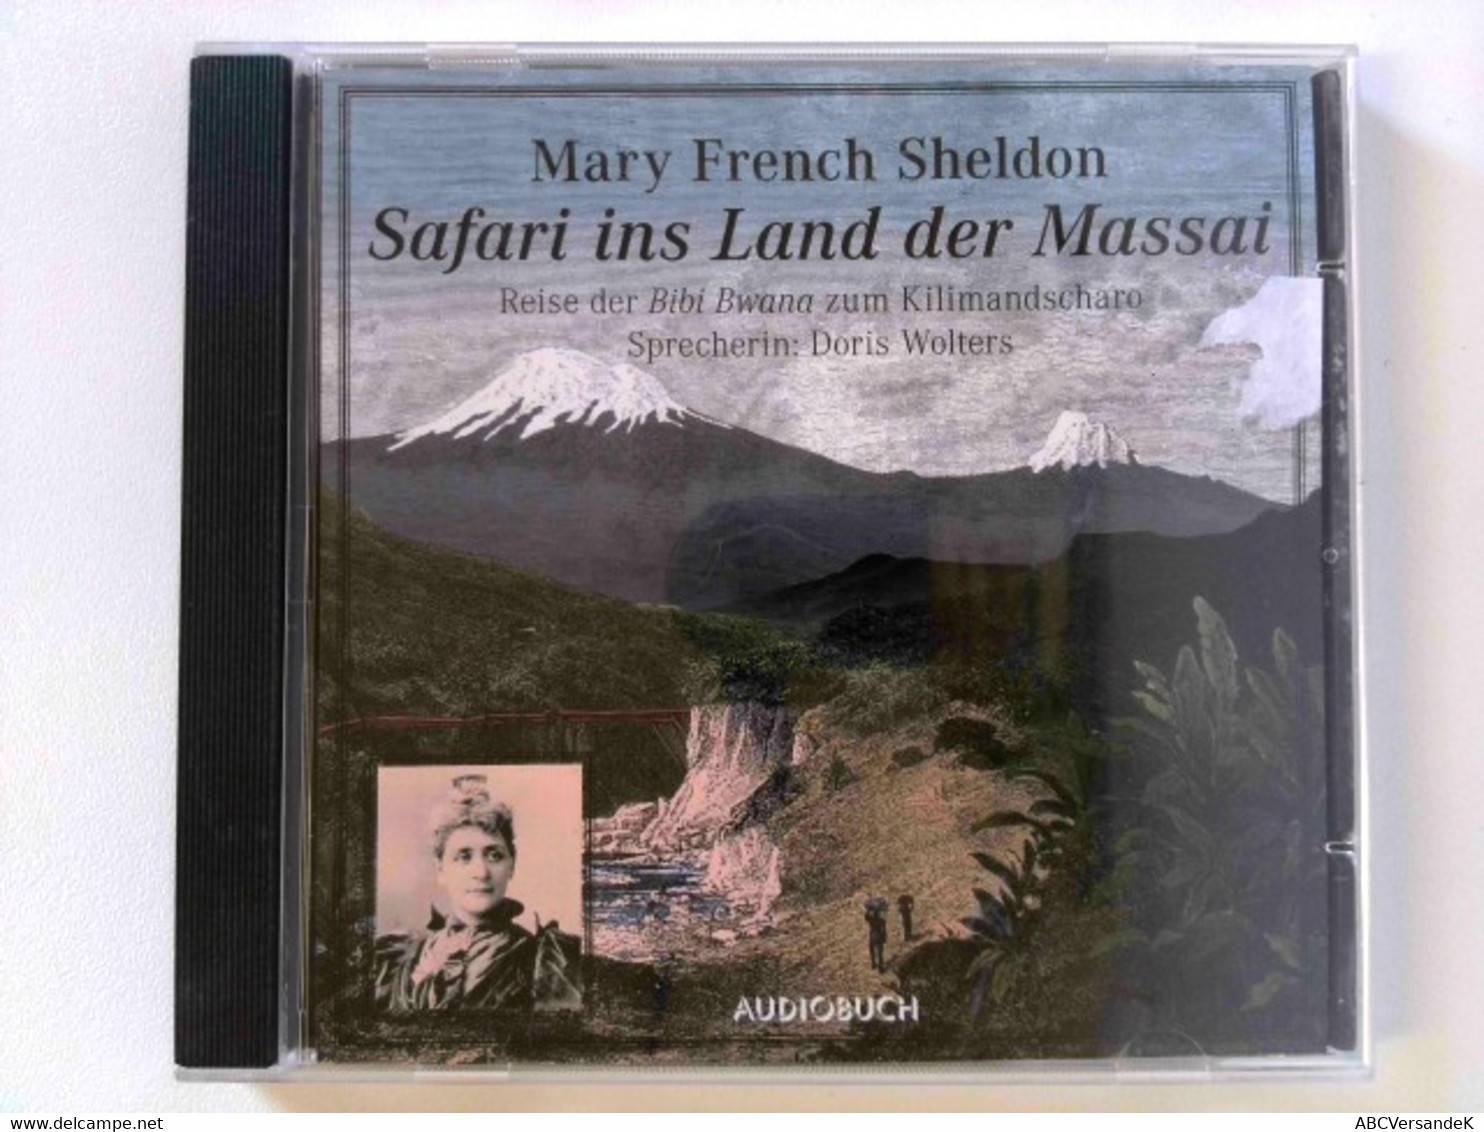 Safari Ins Land Der Massai. Reise Der Bibi Bwana Zum Kilimandscharo - CDs